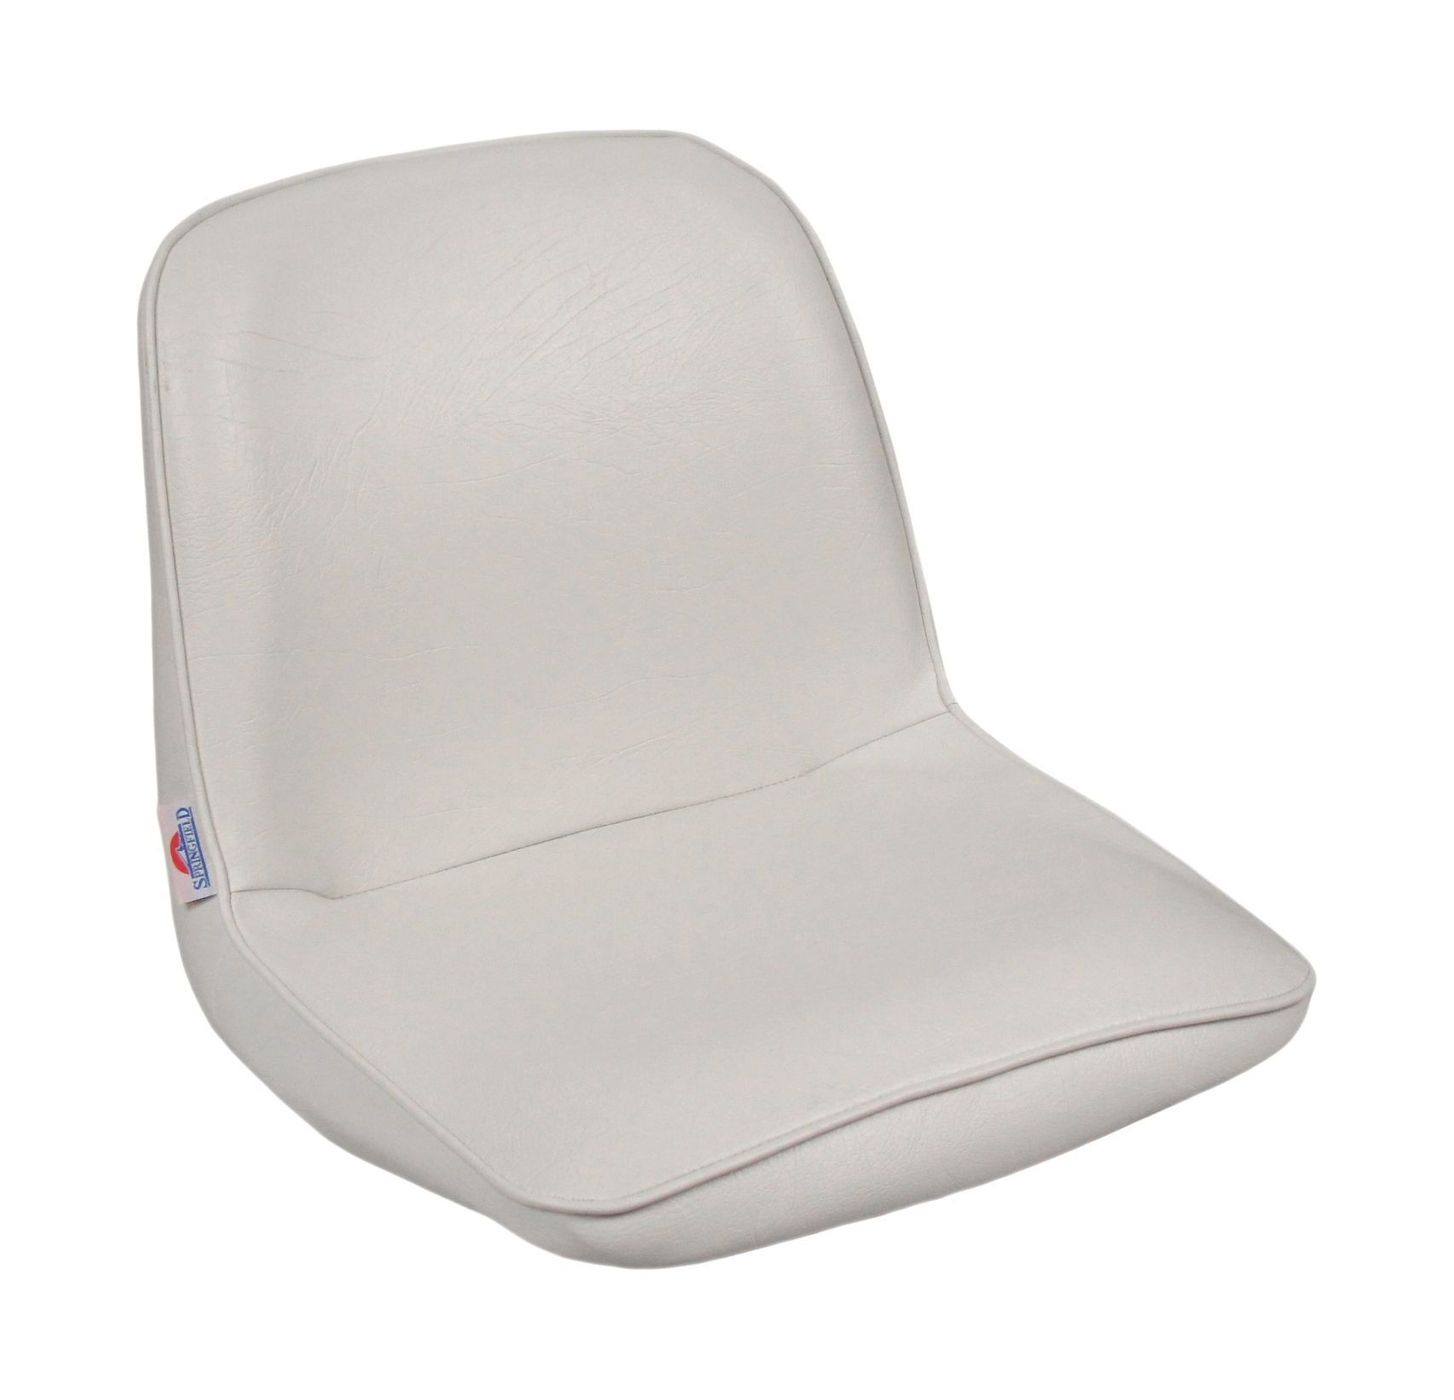 Кресло FIRST MATE мягкое, материал белый винил 1001006C кресло с перекидной спинкой и болстером twin 46 flip up обивка белый винил 15102w mr